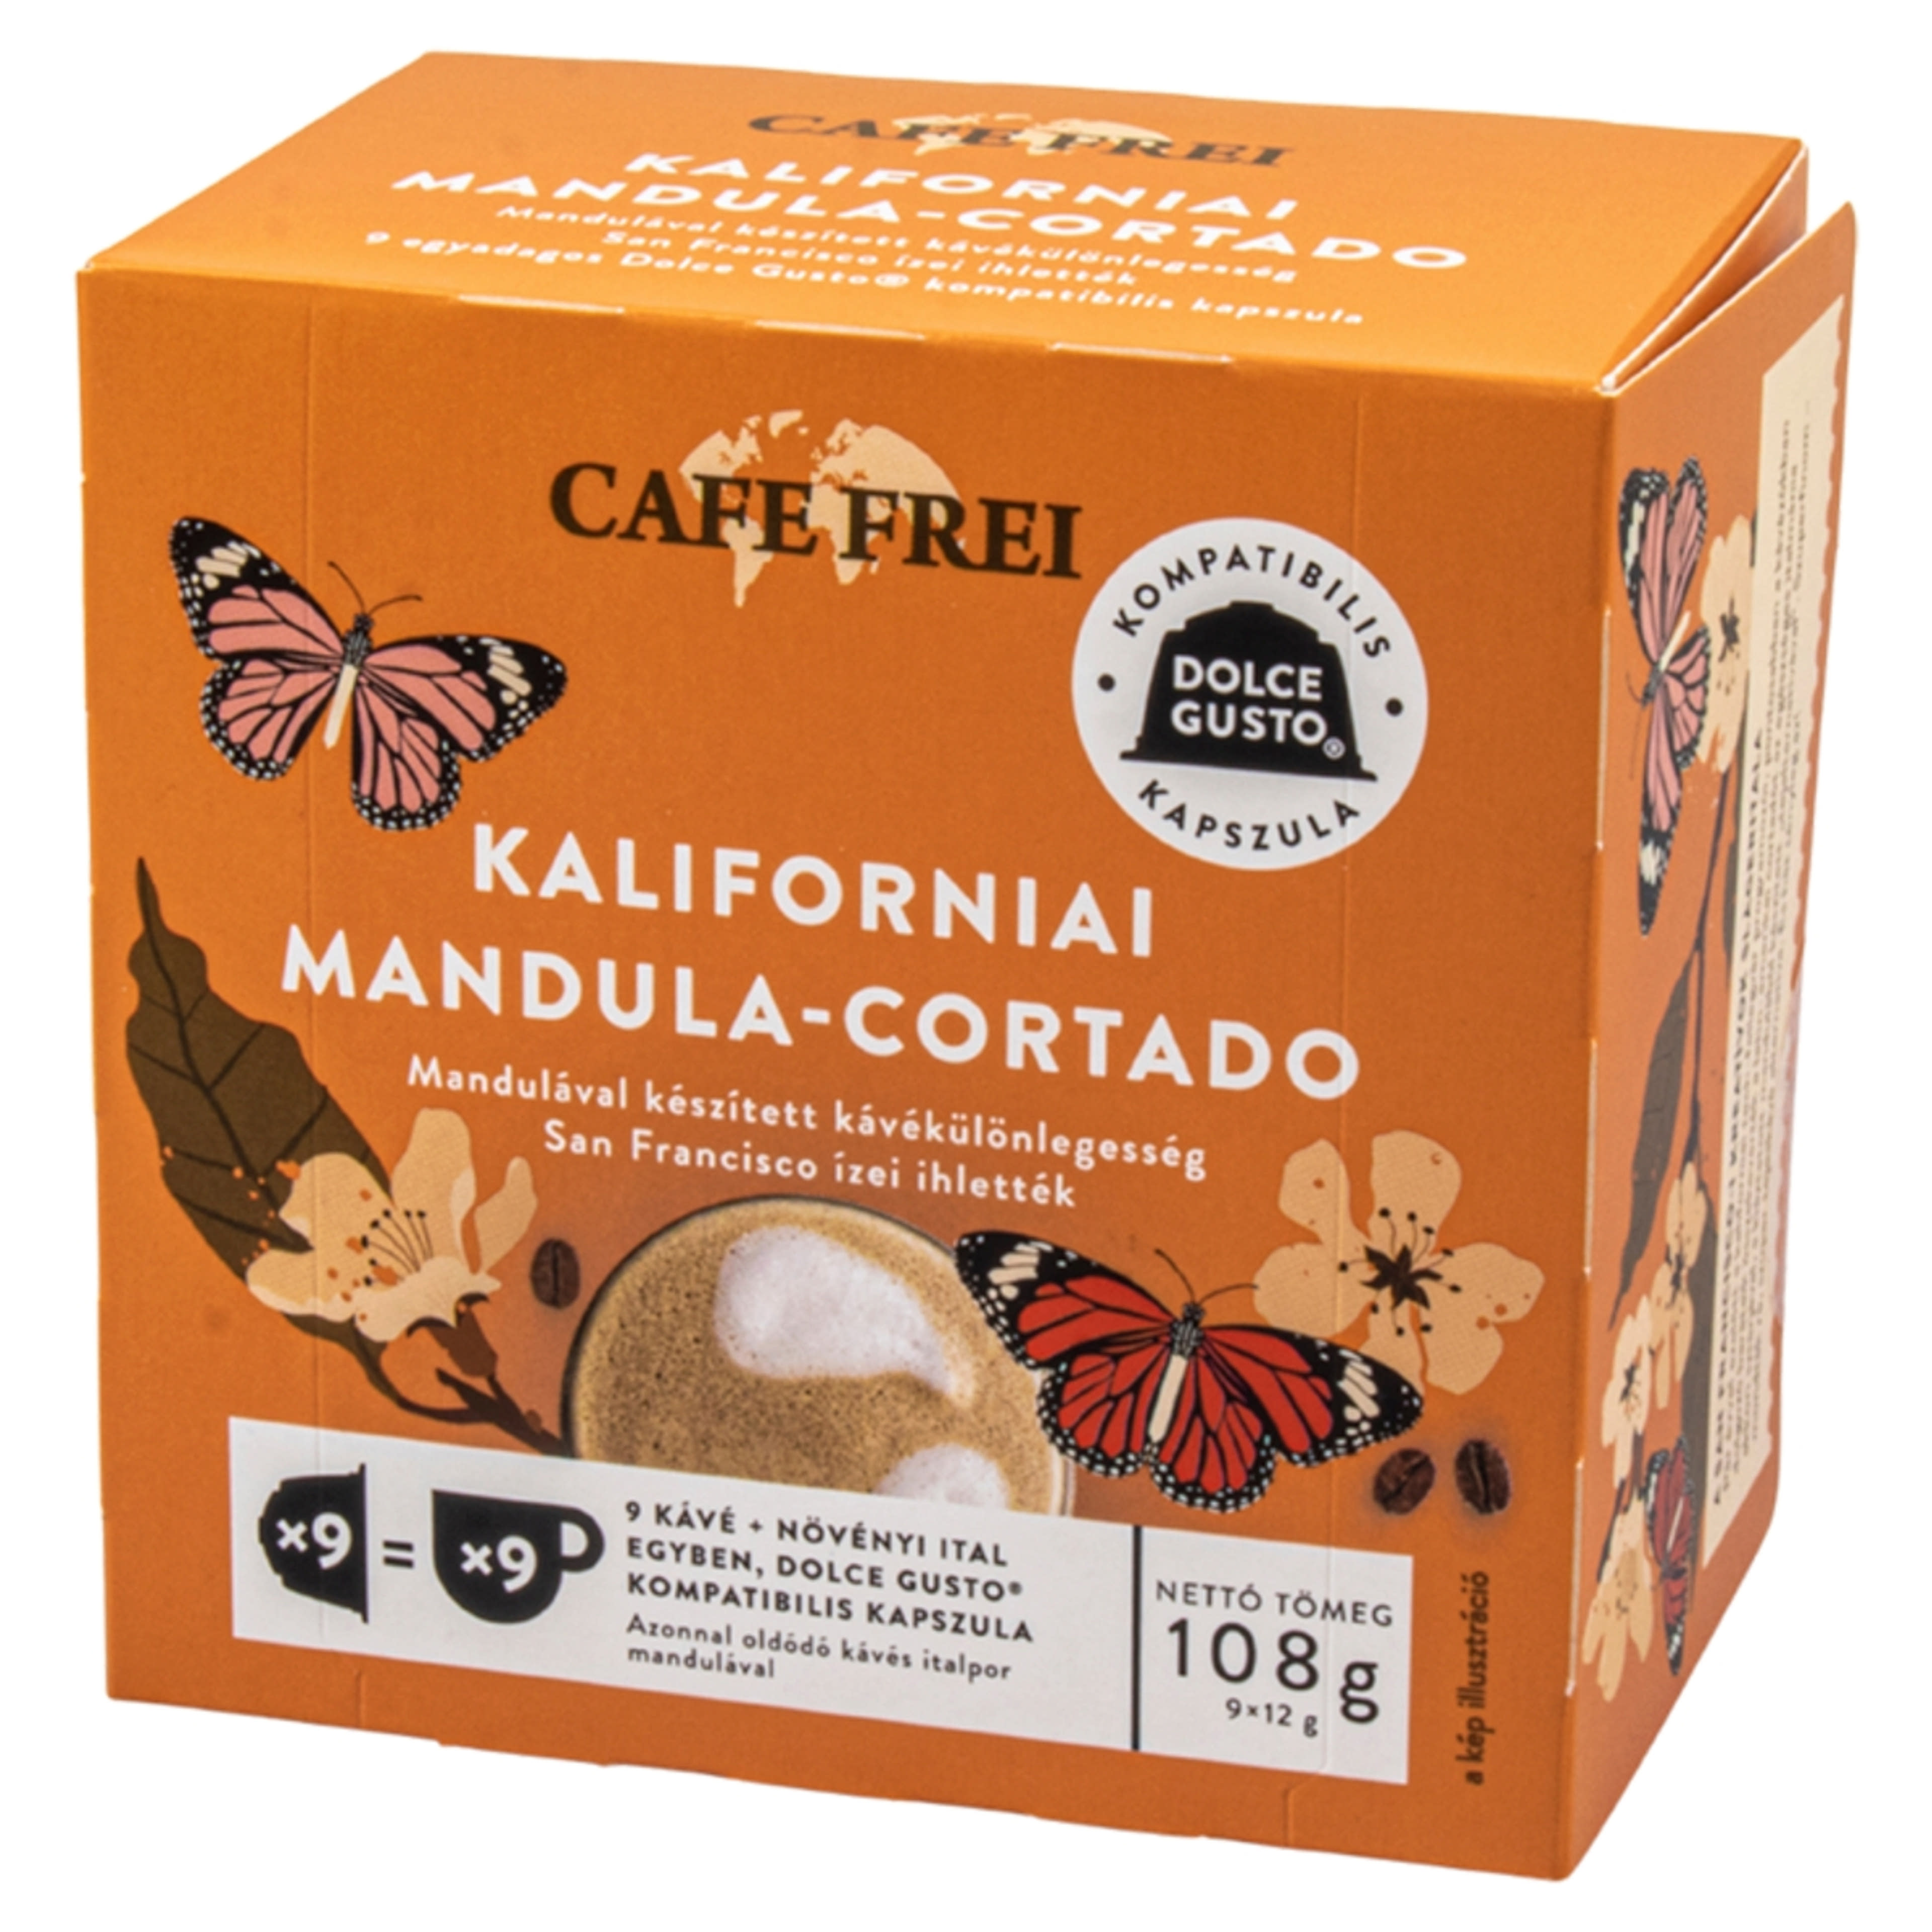 Cafe Frei Kaliforniai Mandula-cortado kapszulás kávé - 9 db